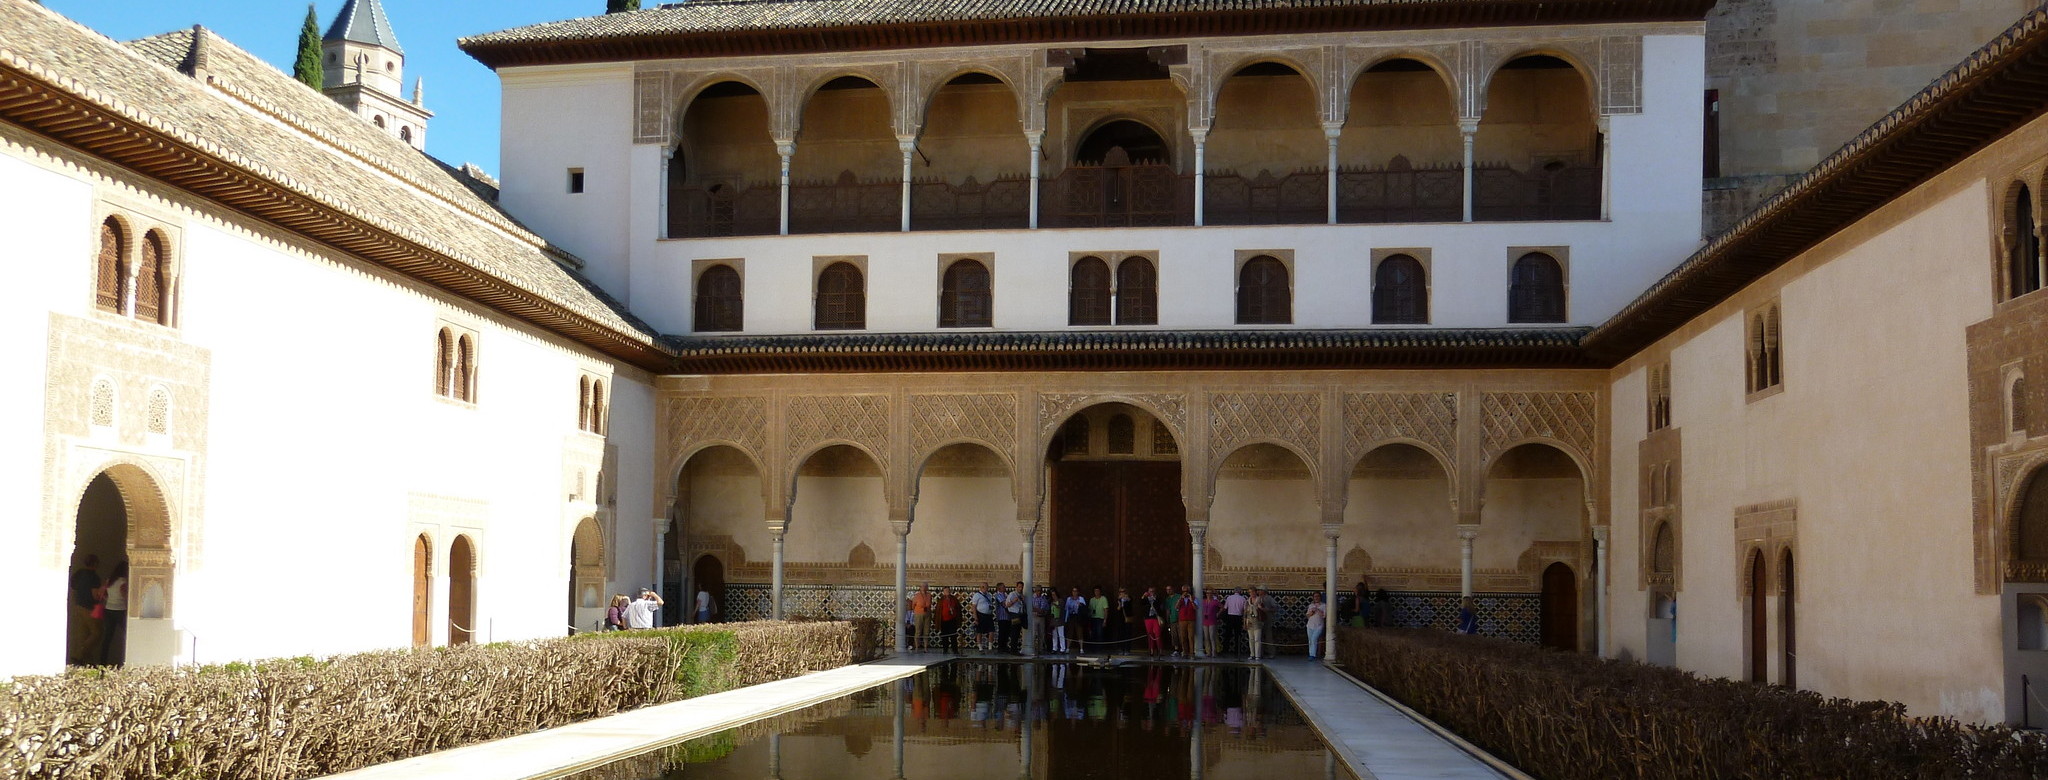 Alhambra Myrthenhof